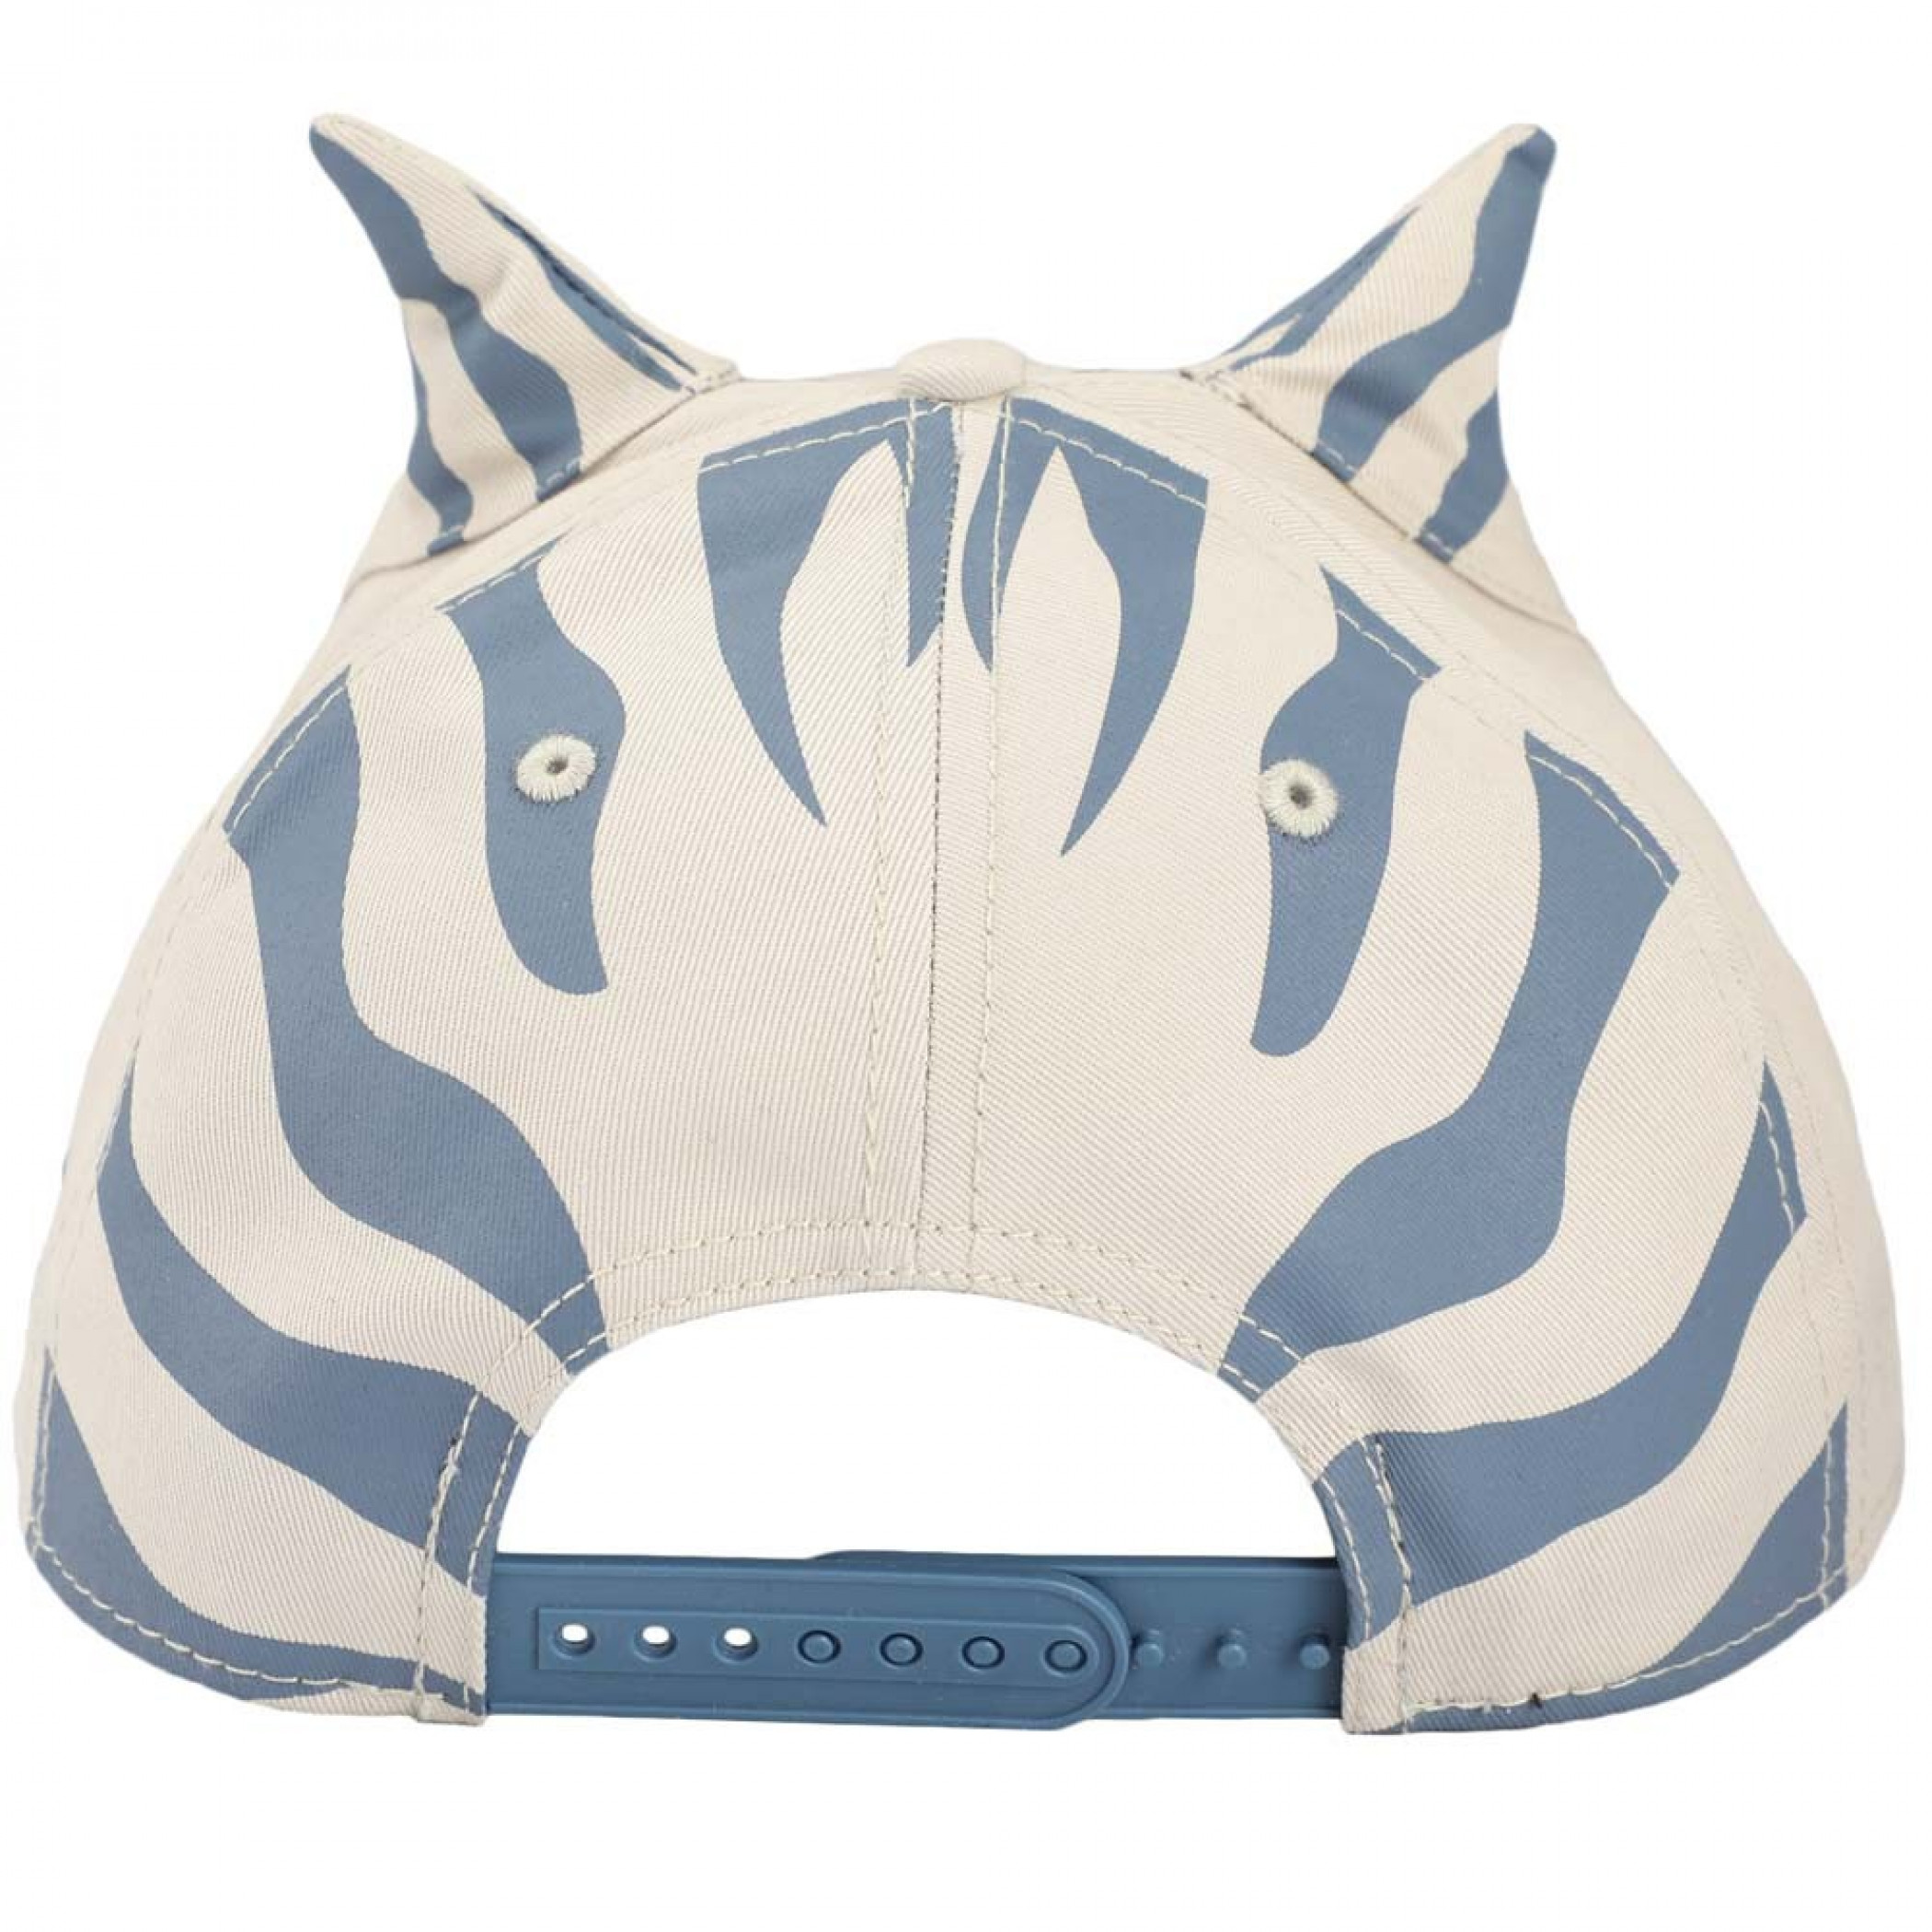 Star Wars The Mandalorian Ahsoka Tano Cosplay Snapback Hat